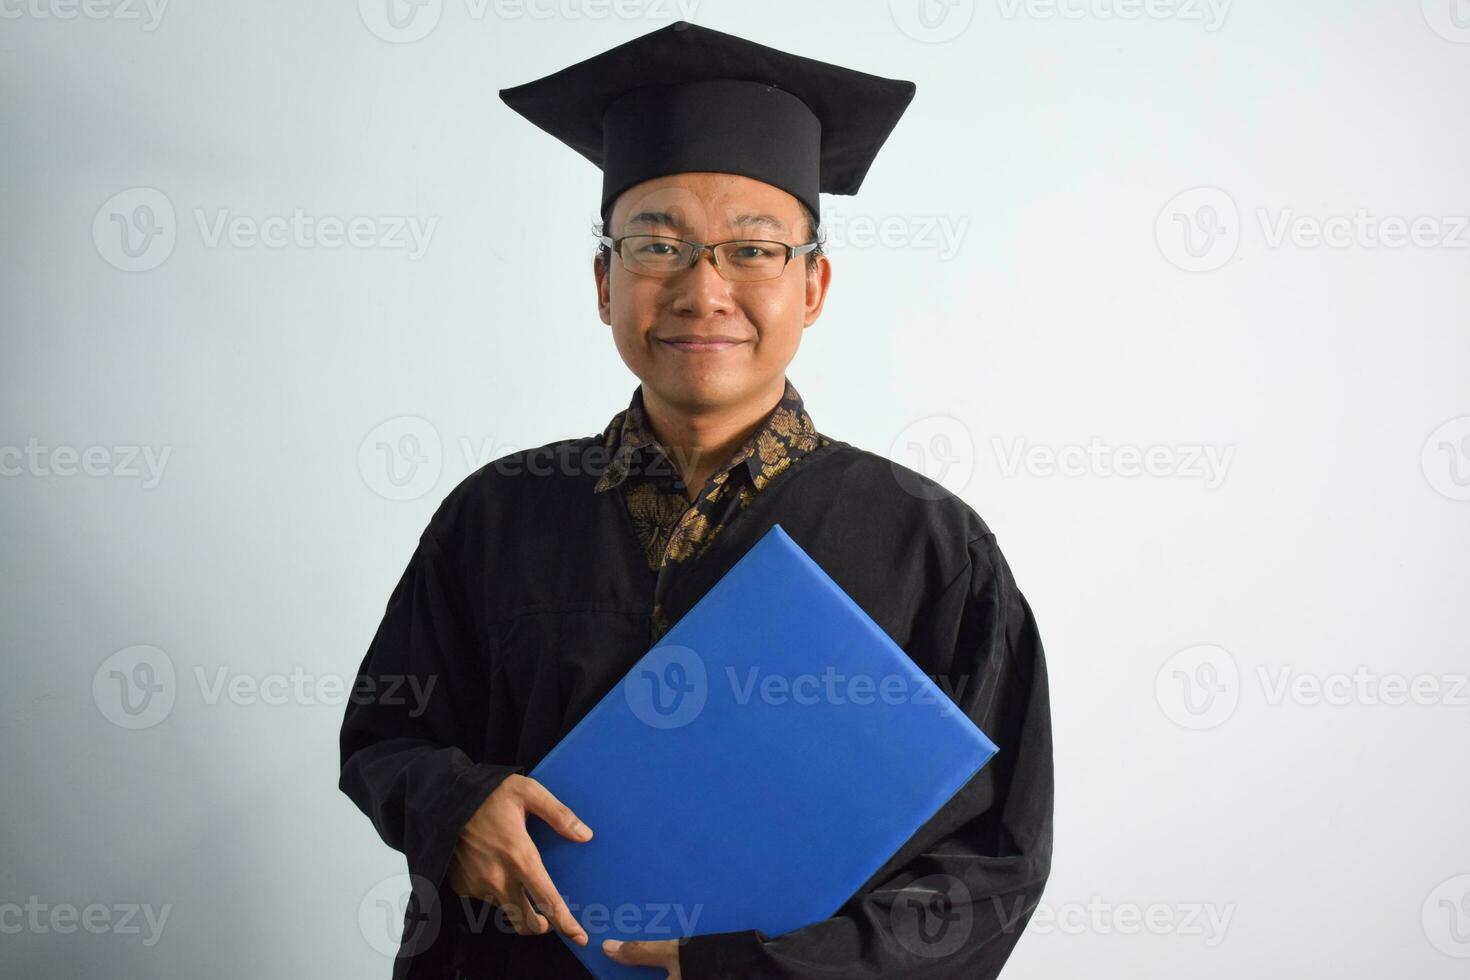 uttrycksfull av vuxen indonesien manlig ha på sig gradering morgonrock, hatt och glasögon, asiatisk manlig gradering föra tom blå certifikat isolerat på vit bakgrund, uttryck av porträtt gradering foto